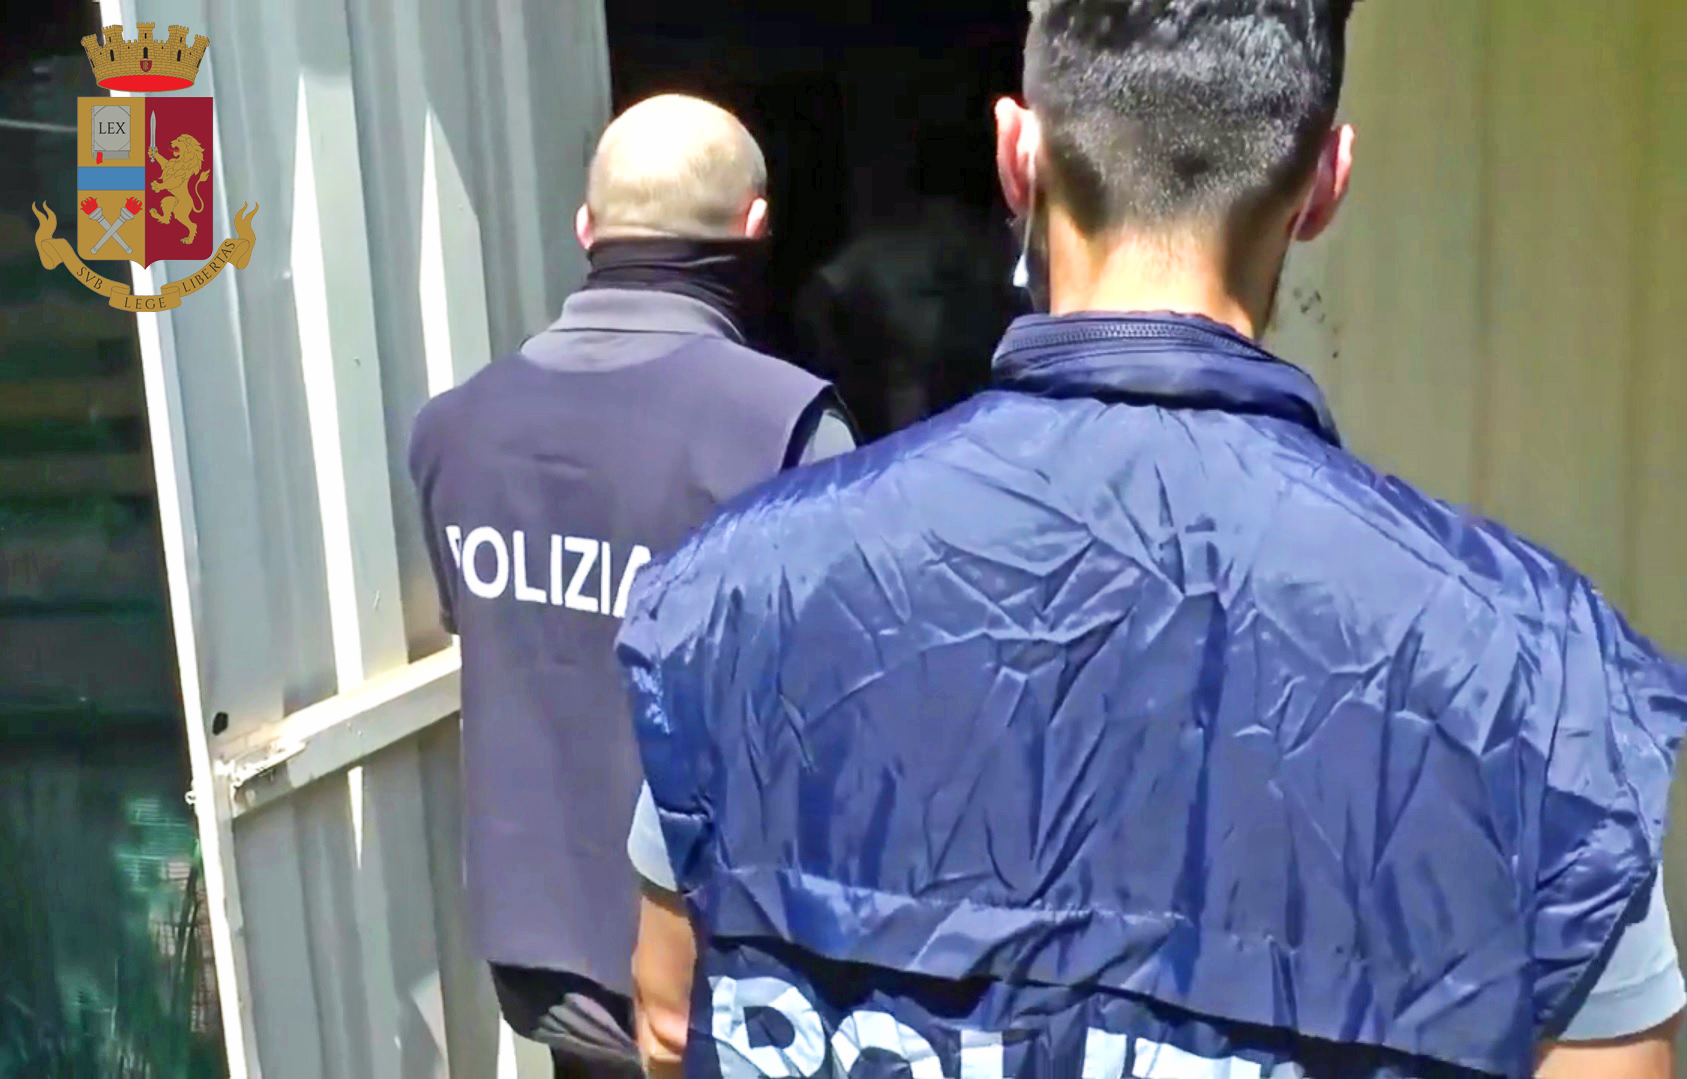 Migliaia di documenti falsi anche per l’attentatore di Vienna e per foreign fighters:  la Polizia di Stato arresta sette persone a Milano e in Lombardia